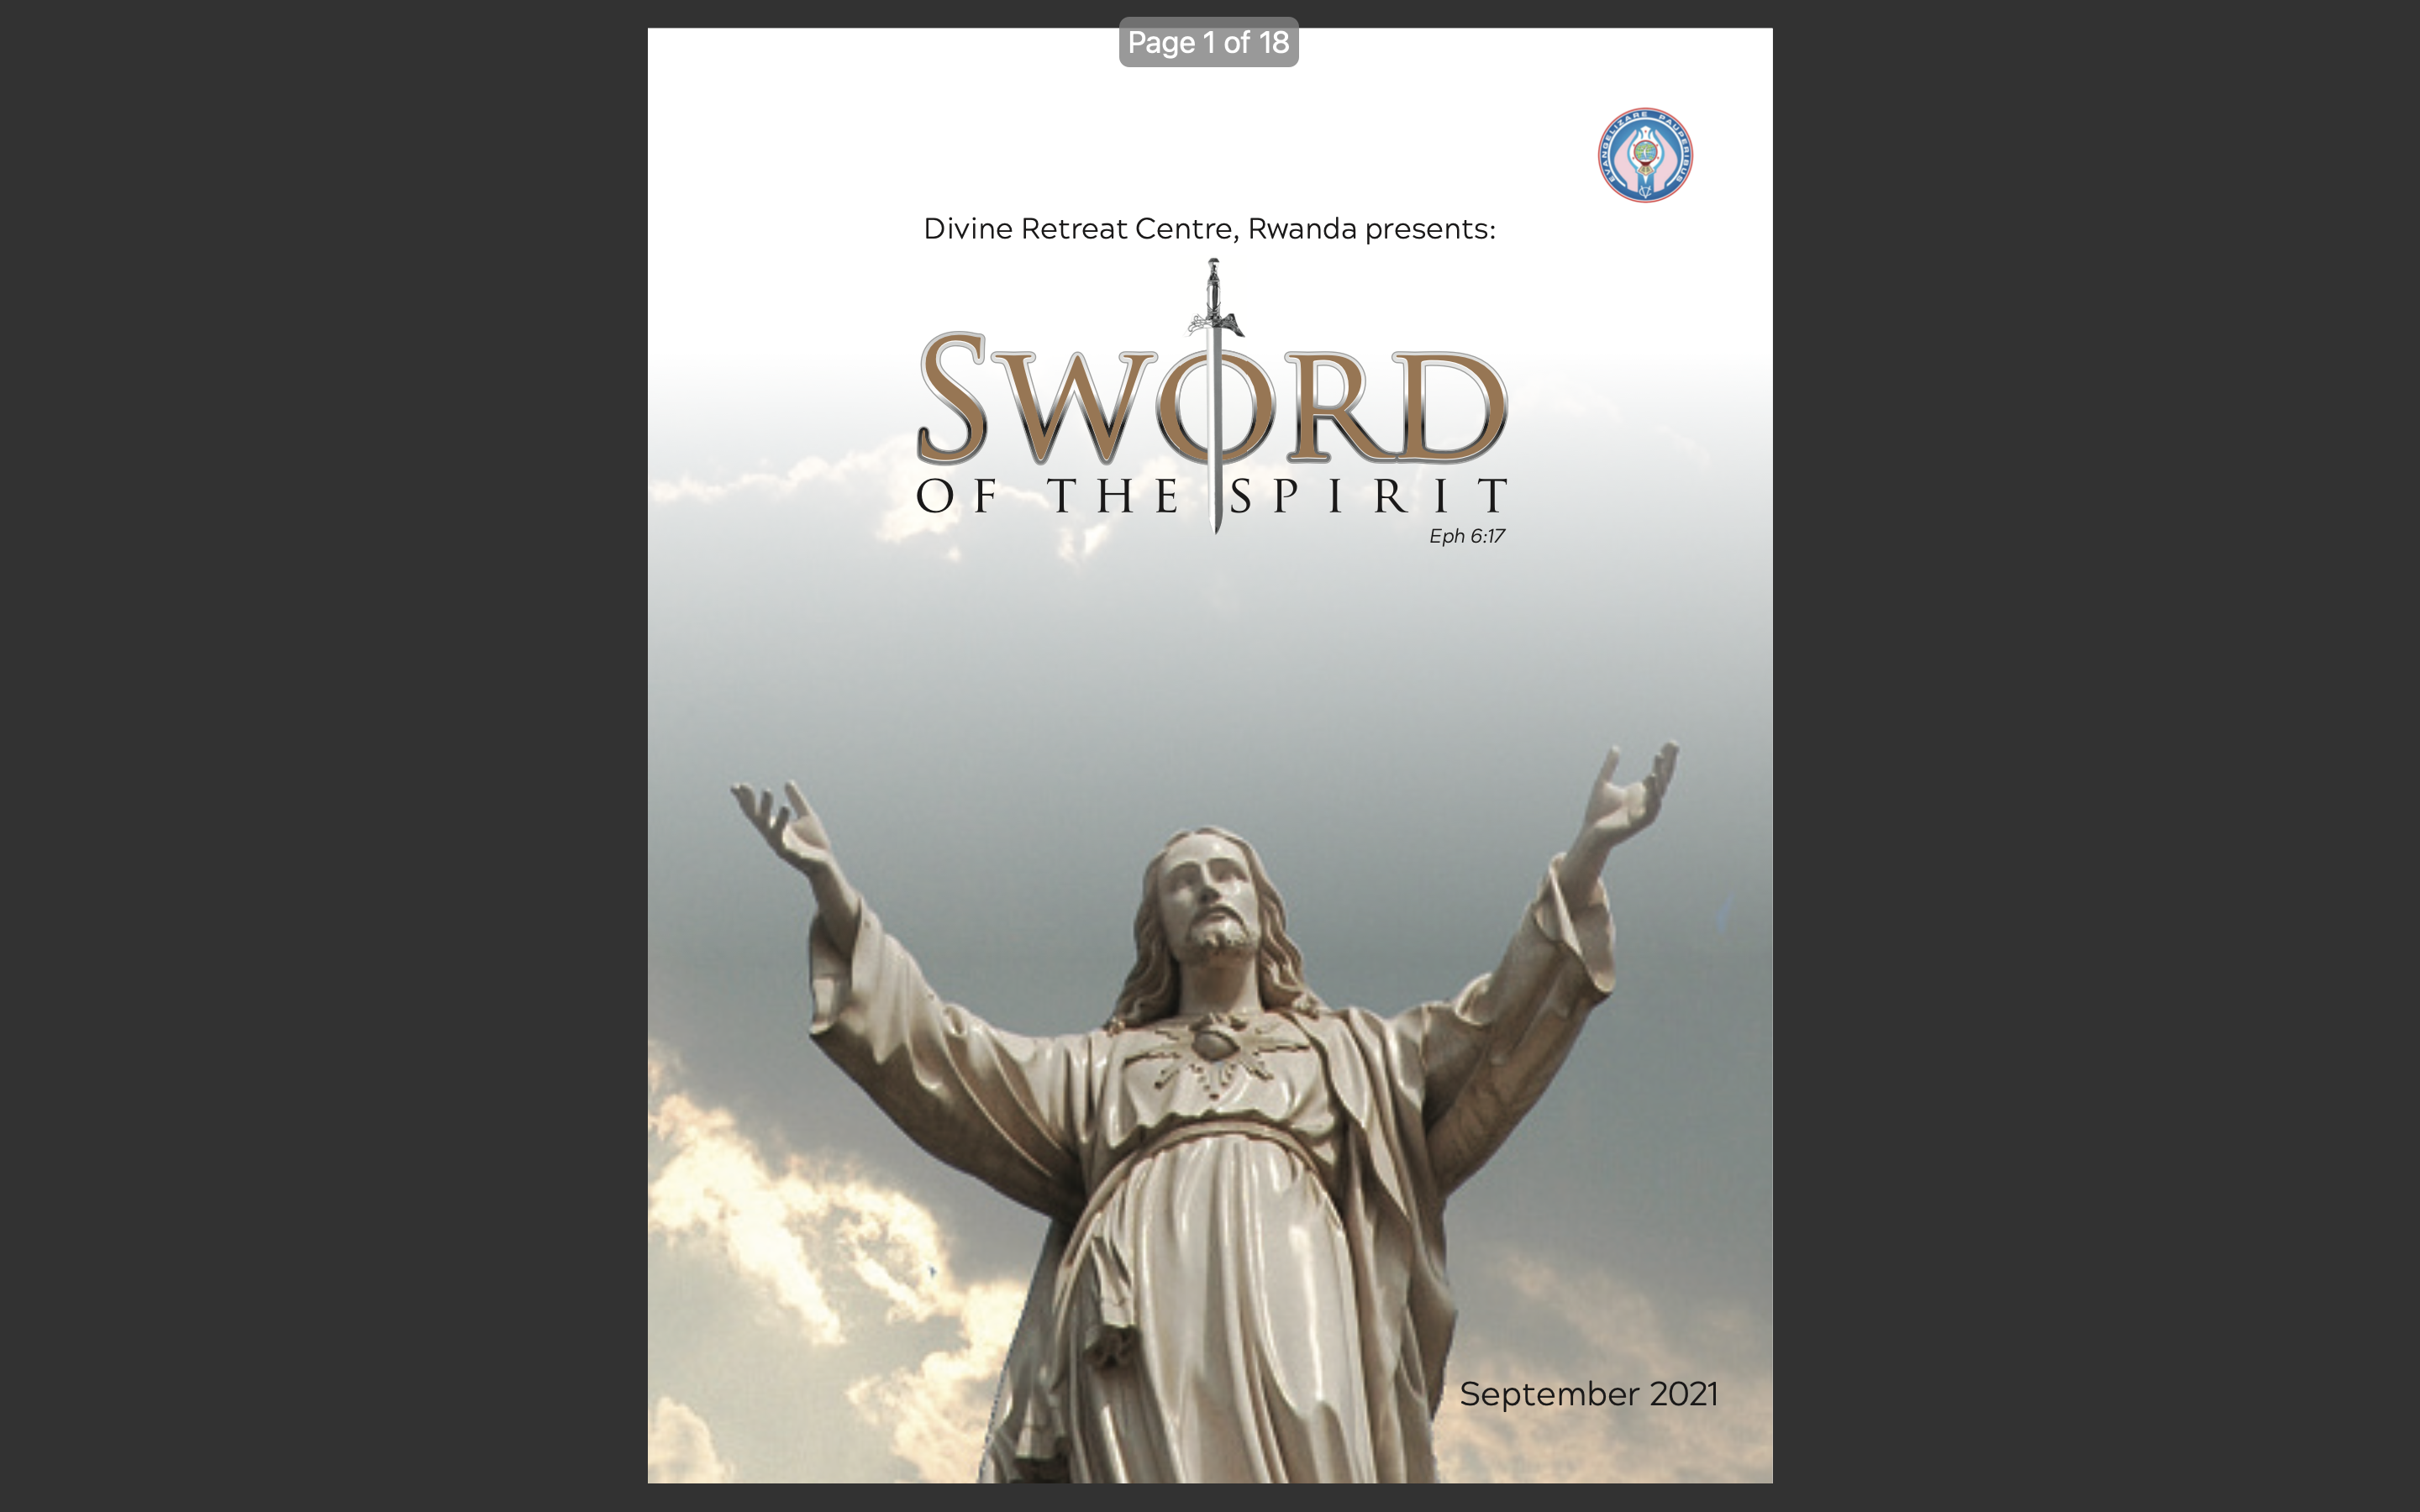 The sword of the spirit - September